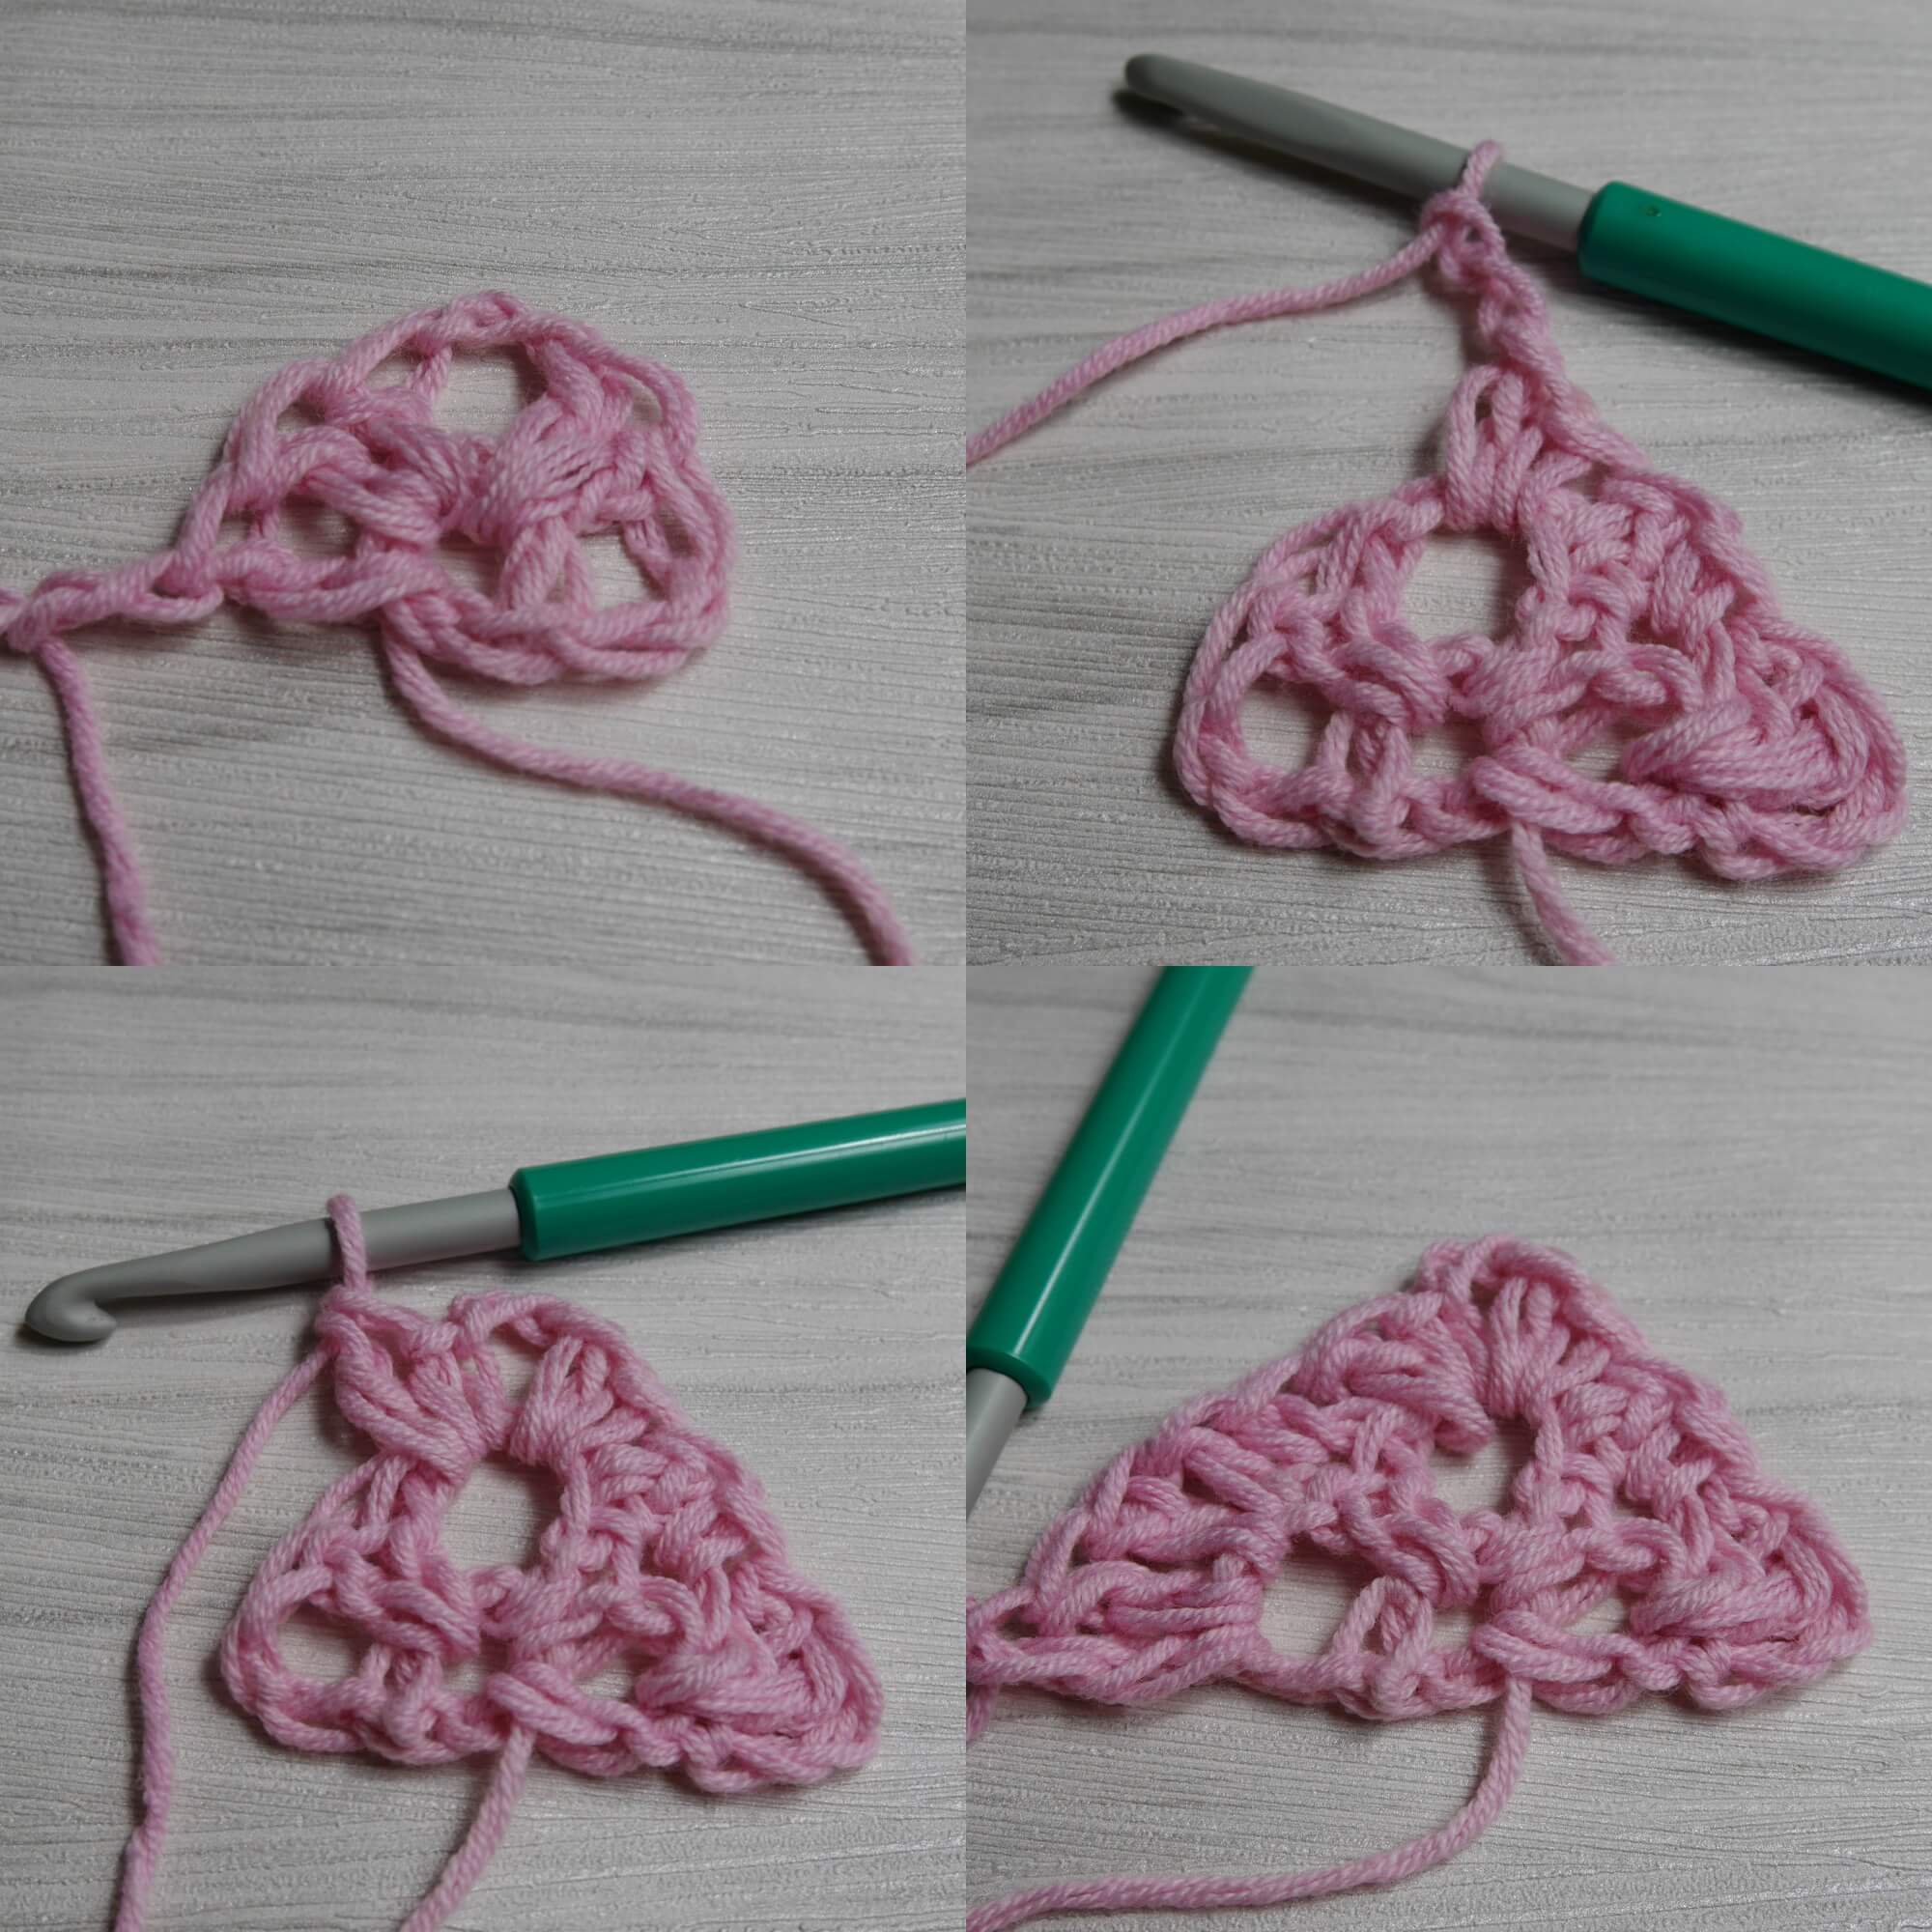 crochet basic stitch scarf by jennyandteddy